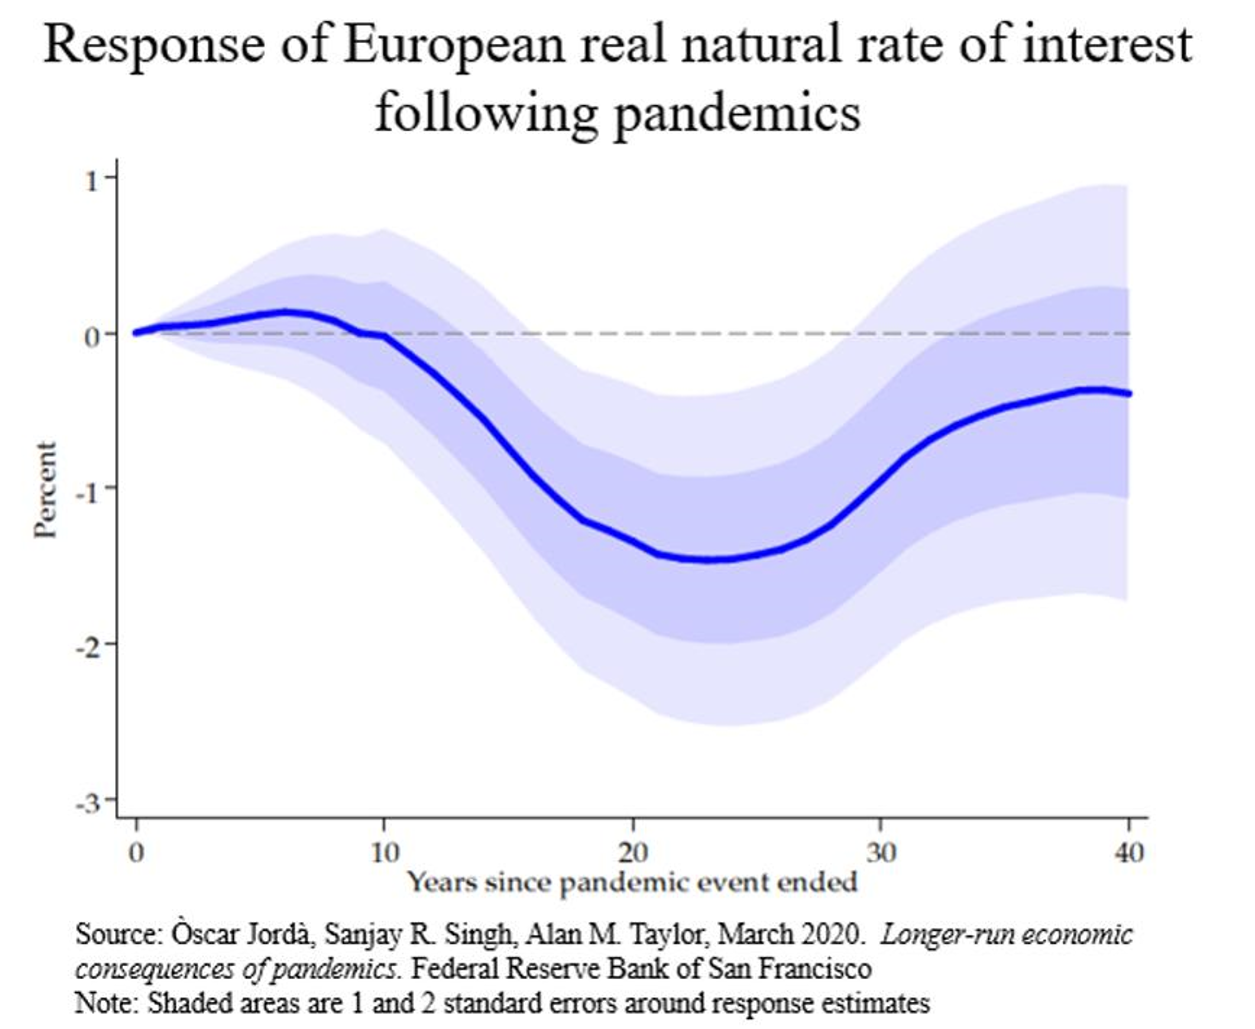 流行病过后的欧洲实际利率变动